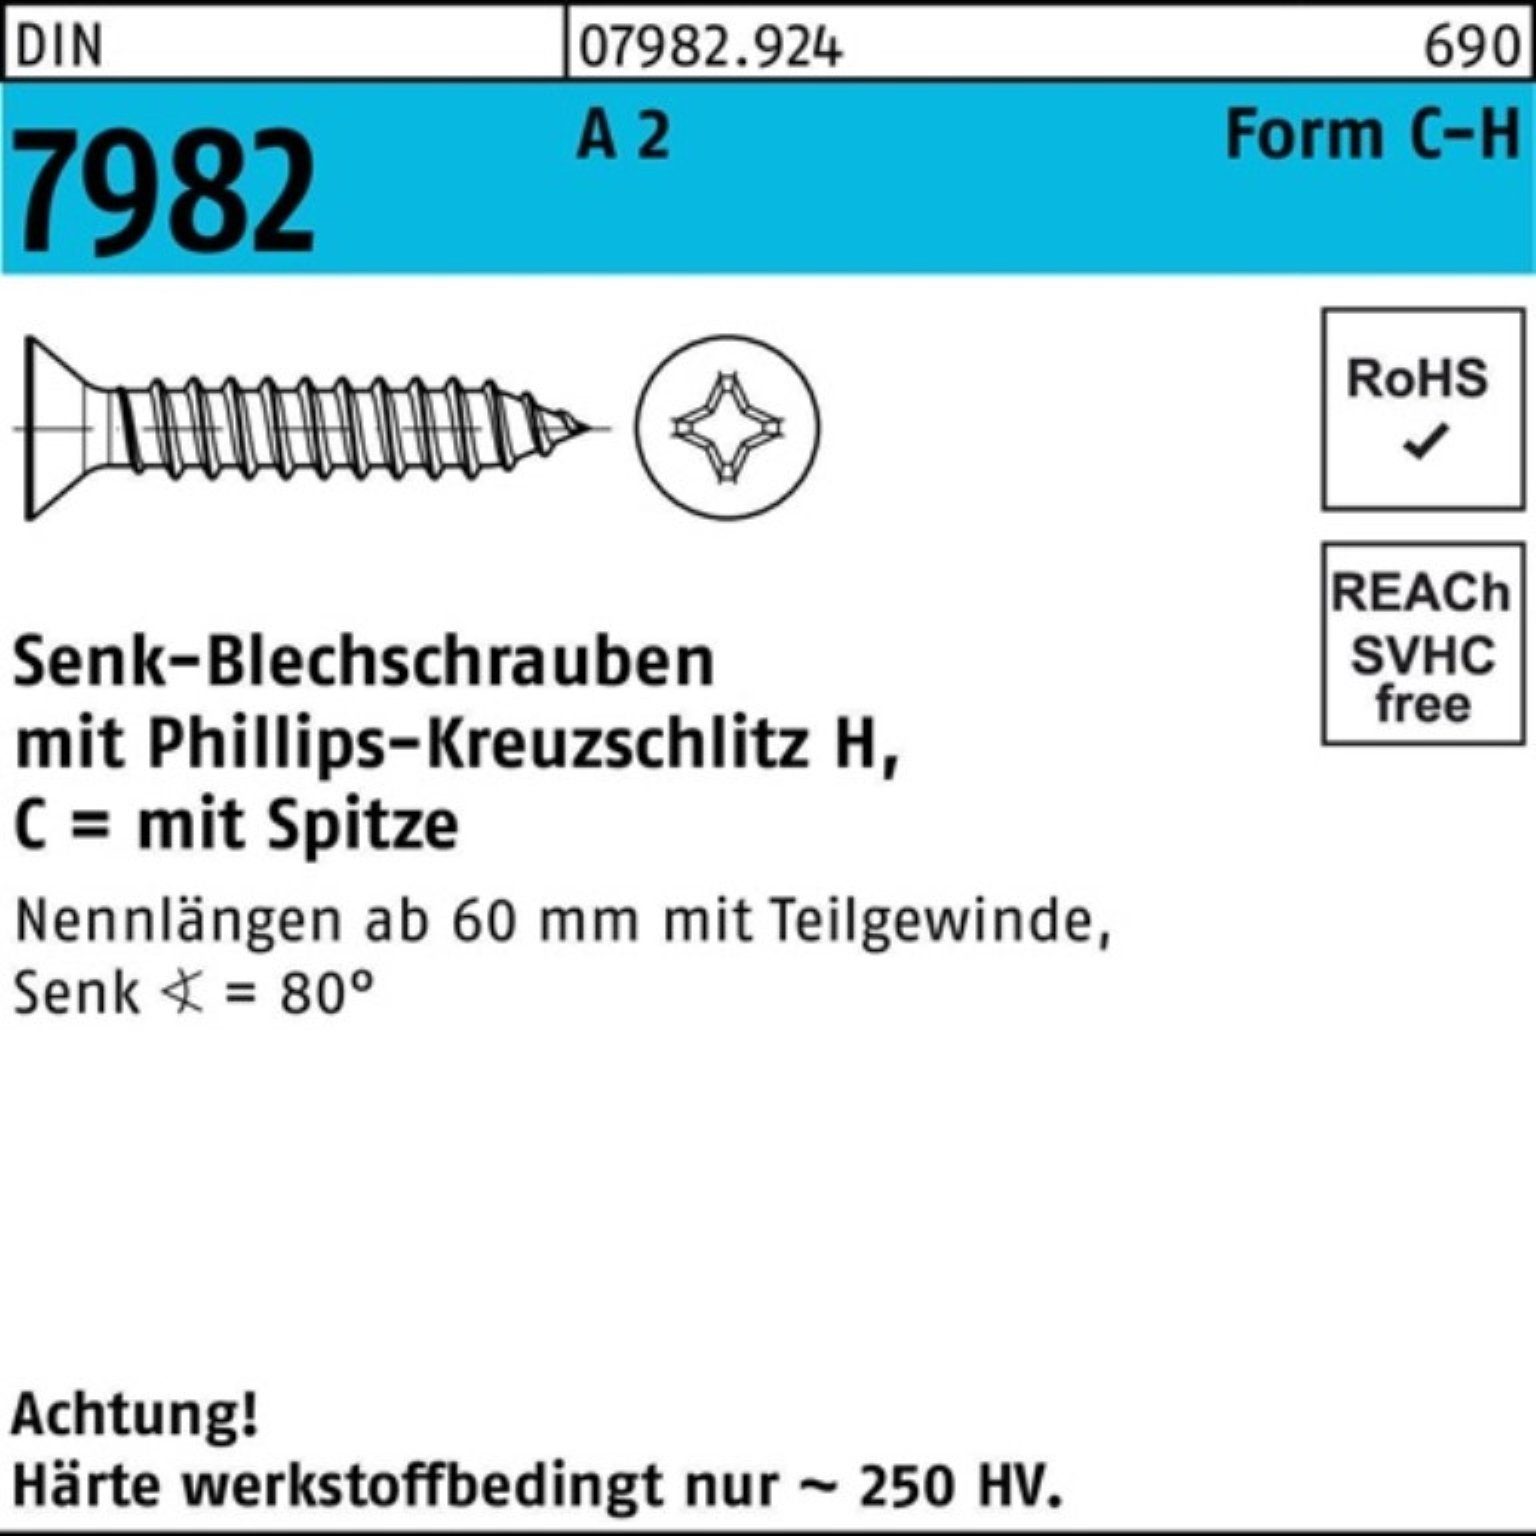 St DIN 7982 19-H 4,2x 500 2 Reyher A 500er Schraube Pack Senkblechschraube PH/Spitze C